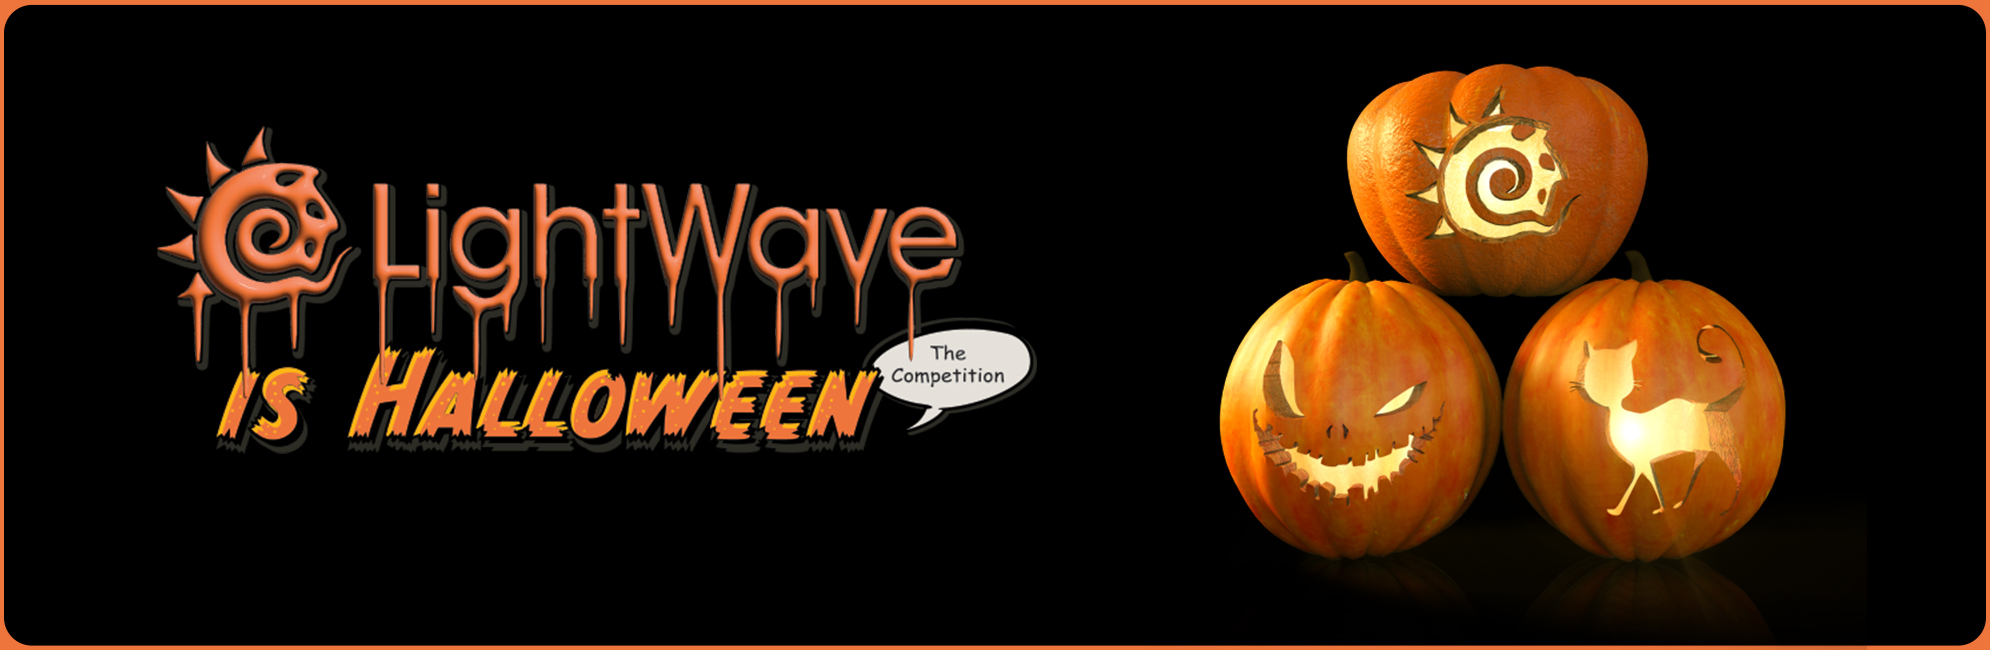 Nome: LightWave is Halloween  LightWave 3D Promo 20320918.jpg
Visite: 129
Dimensione: 387.4 KB